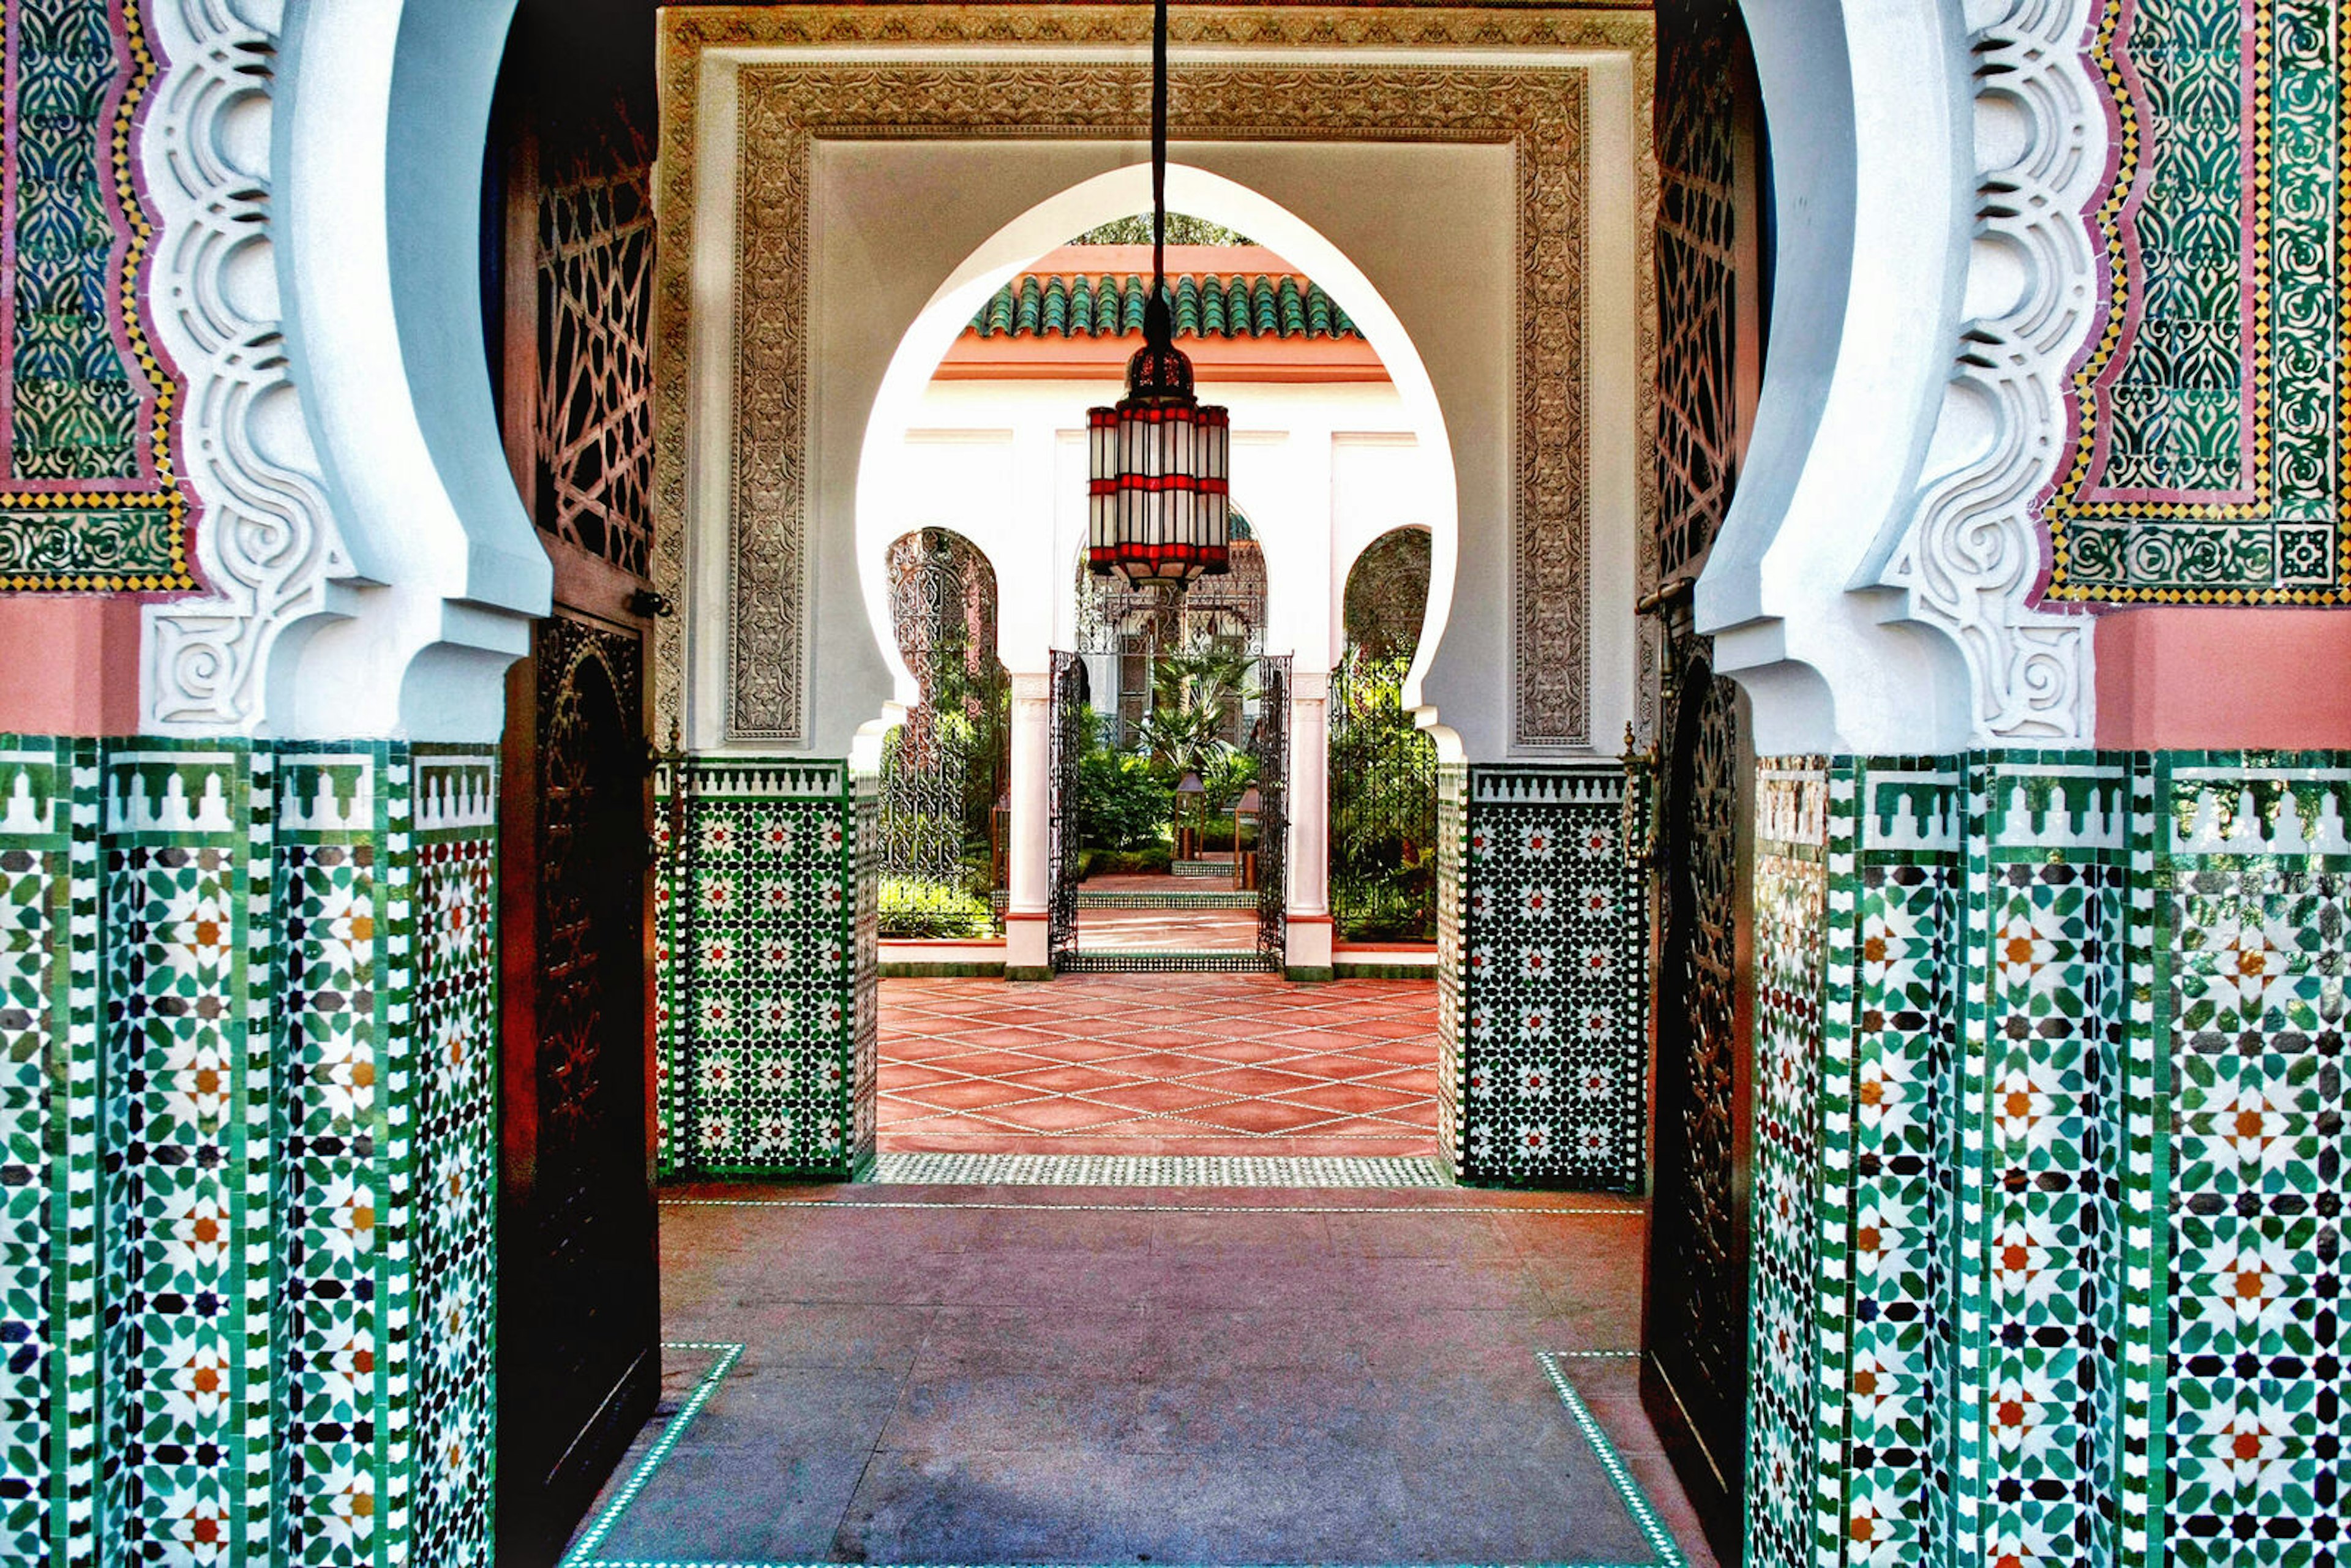 Hammam Marrakesh: Hamman - một phong cách tắm truyền thống của các nước Ả Rập đã được yêu thích trên khắp thế giới. Đặc biệt, Hammam Marrakesh đem lại cho bạn trải nghiệm tuyệt vời của những phương pháp chăm sóc da và làm đẹp đặc trưng của nền văn hóa Maroc. Hãy tìm hiểu thêm thông tin về Hammam Marrakesh để cảm nhận sự thư giãn tuyệt vời này. 